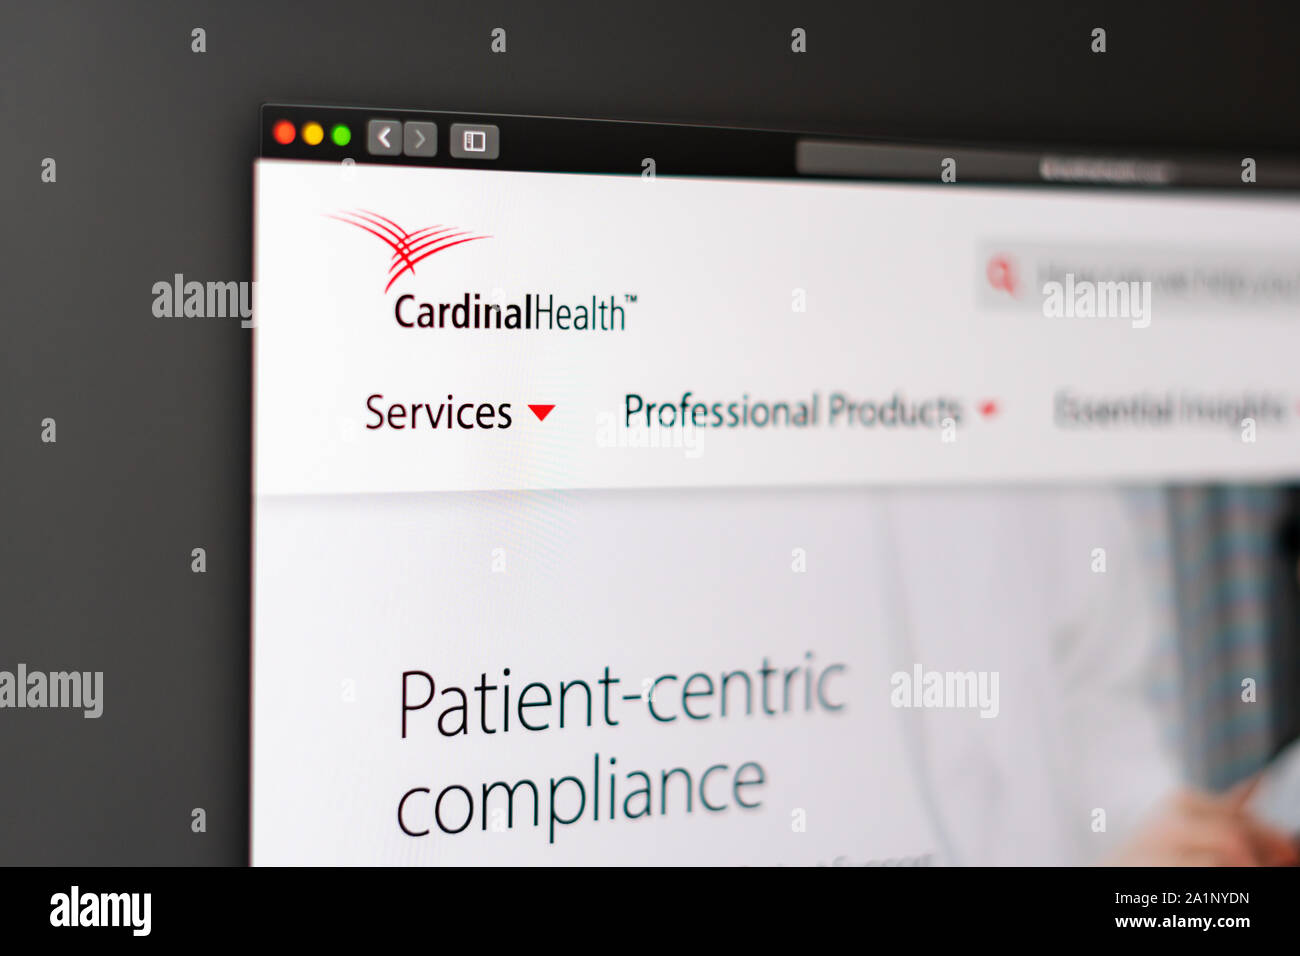 Cardinal Health Startseite. In der Nähe von CardinalHealth Logo. Kann als illustrative für Medien oder Marketing Konzept verwendet werden. Stockfoto